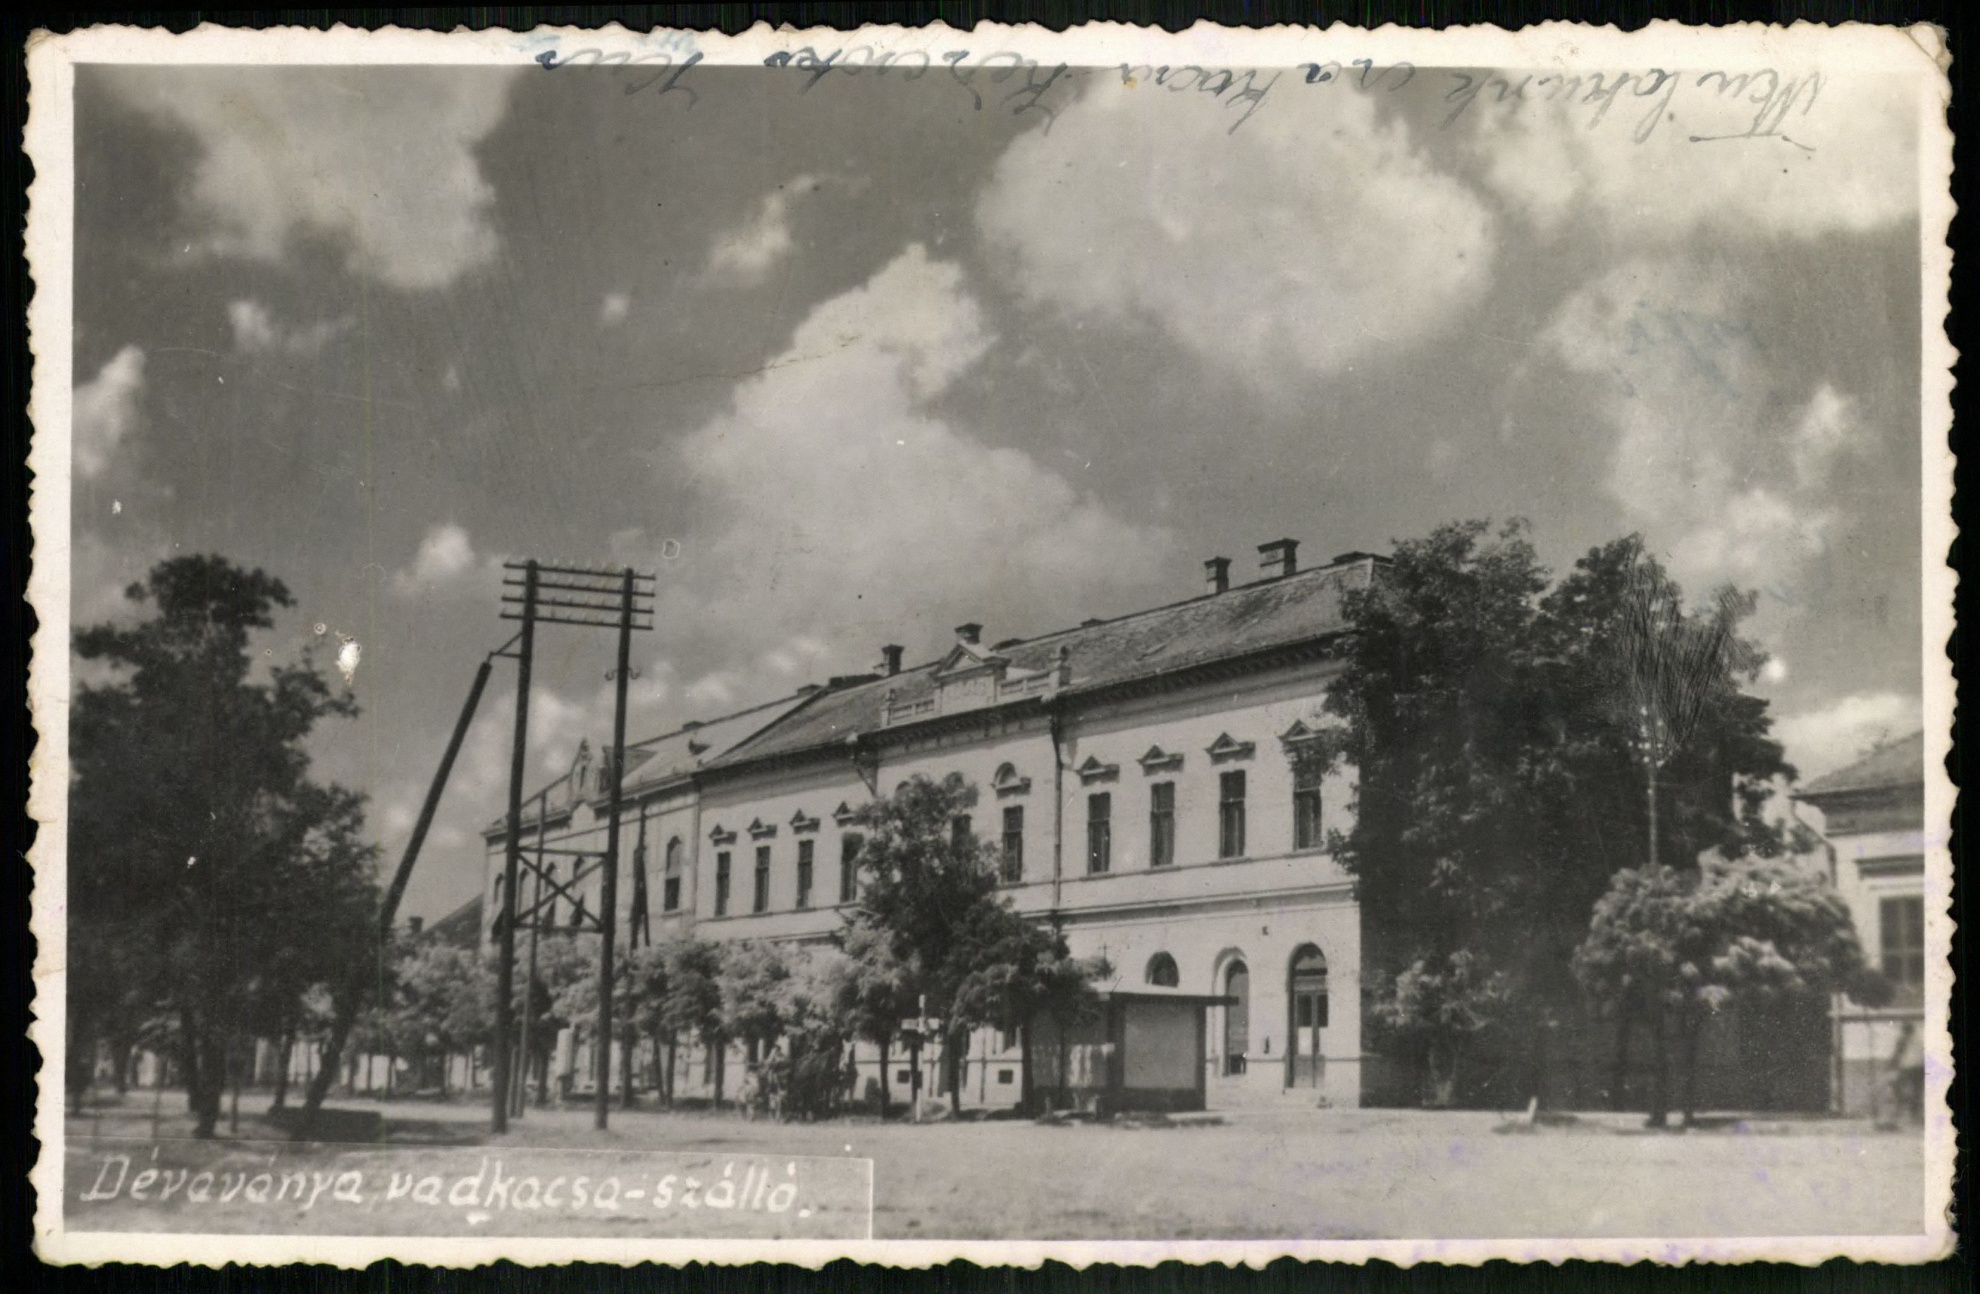 Dévaványa Vadkacsa szálló (Magyar Kereskedelmi és Vendéglátóipari Múzeum CC BY-NC-ND)